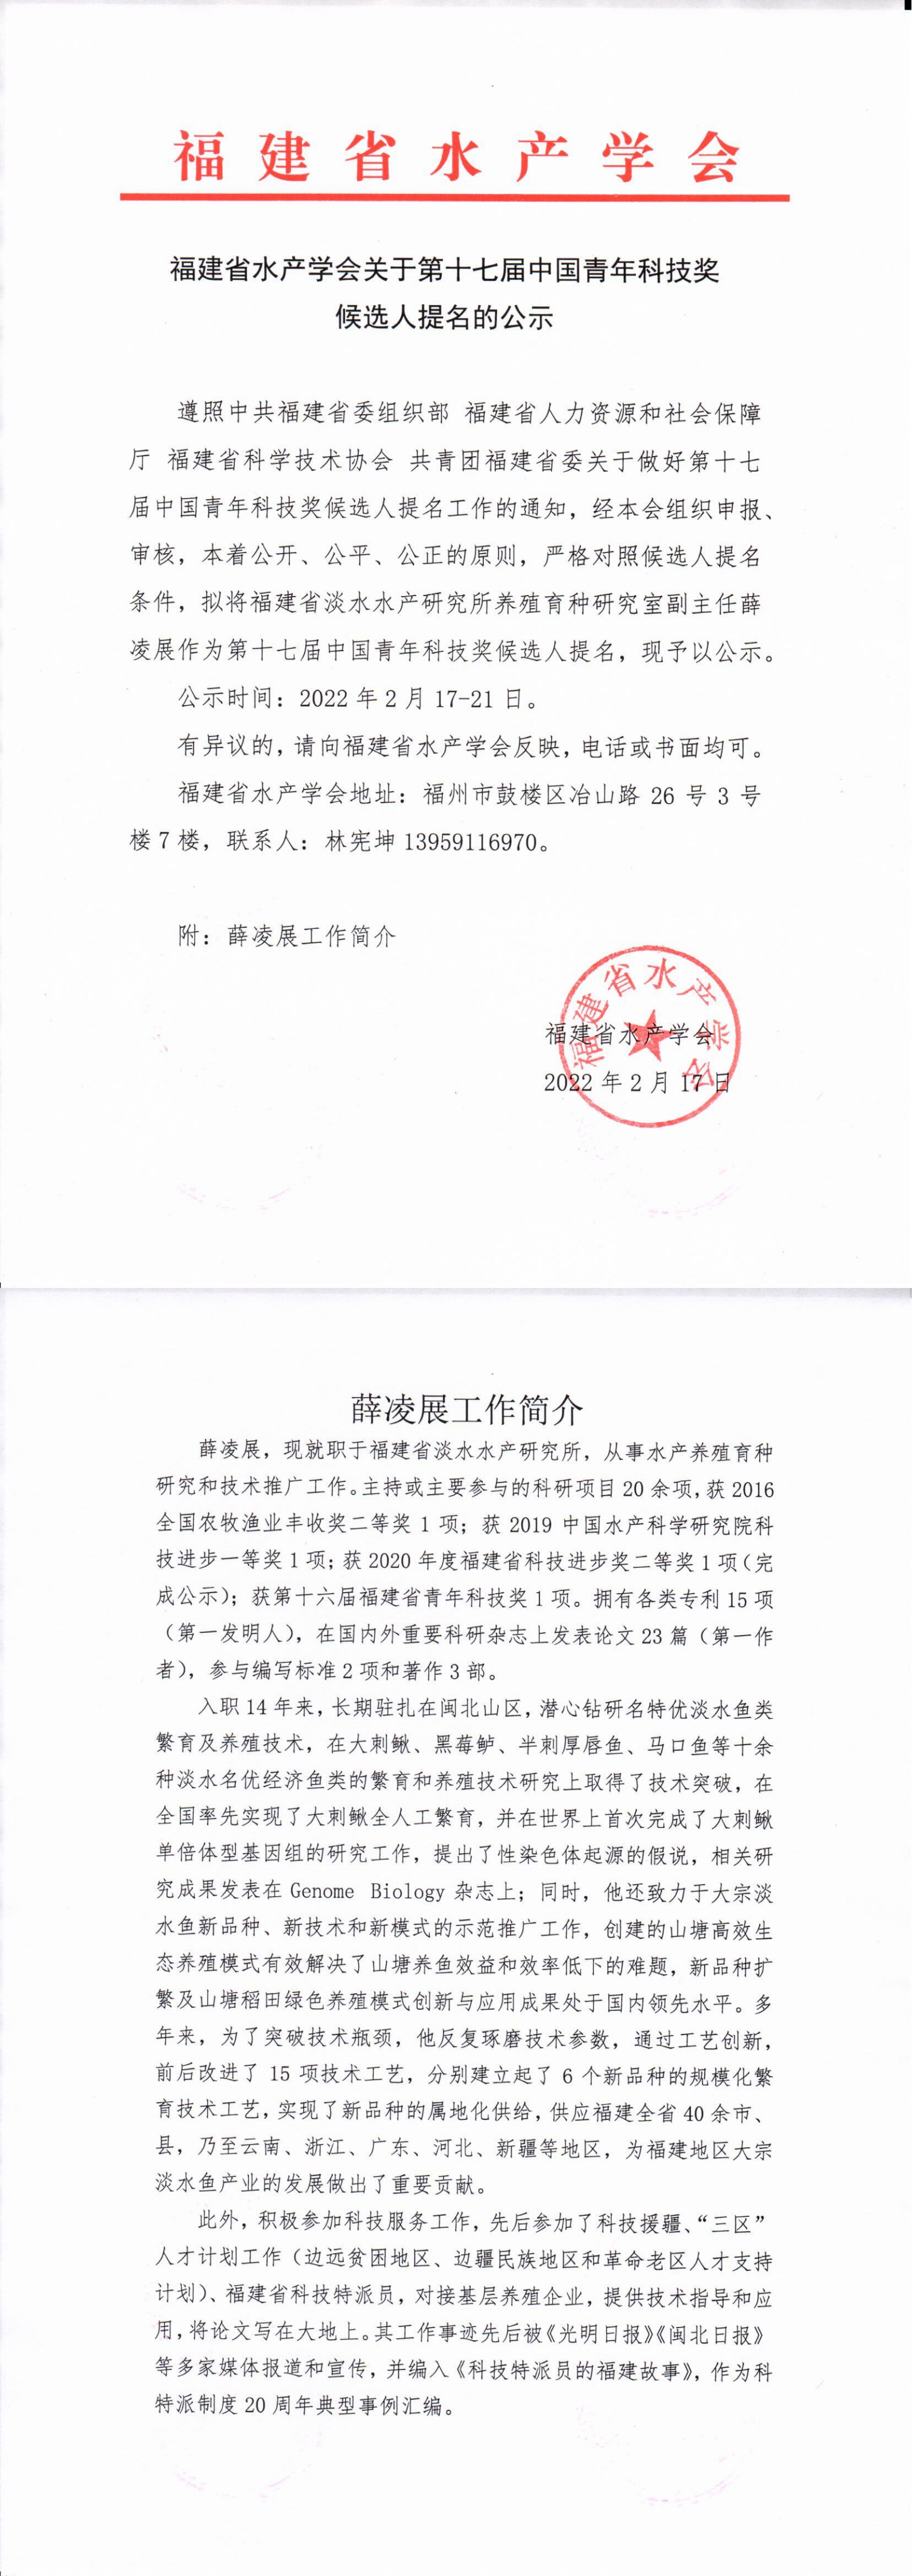 中国青年科技奖候选人提名公示_00.png